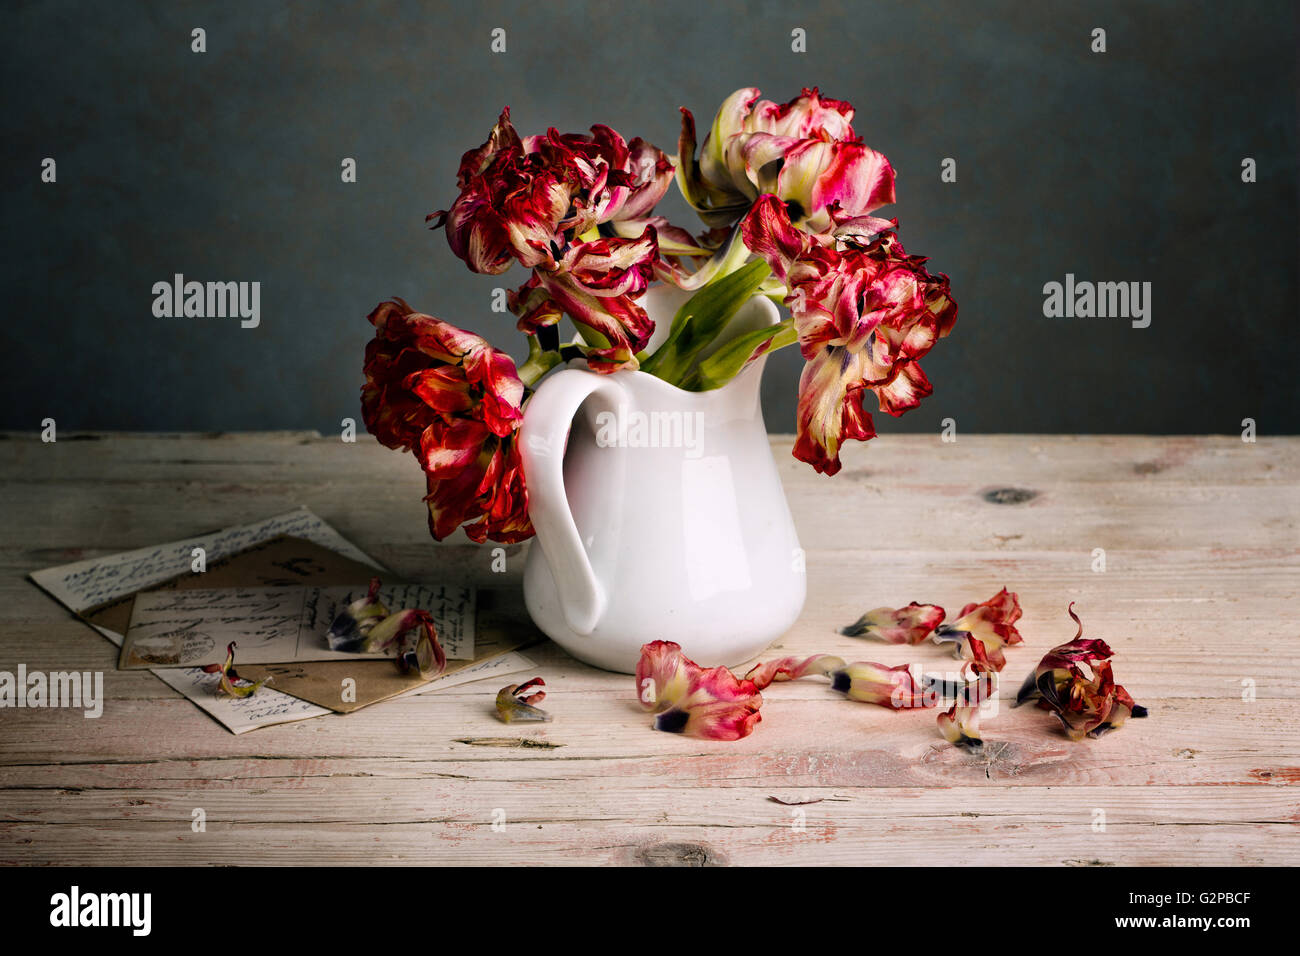 Stillleben mit rote Tulpe Blumen in Porzellan Dose Stockfoto